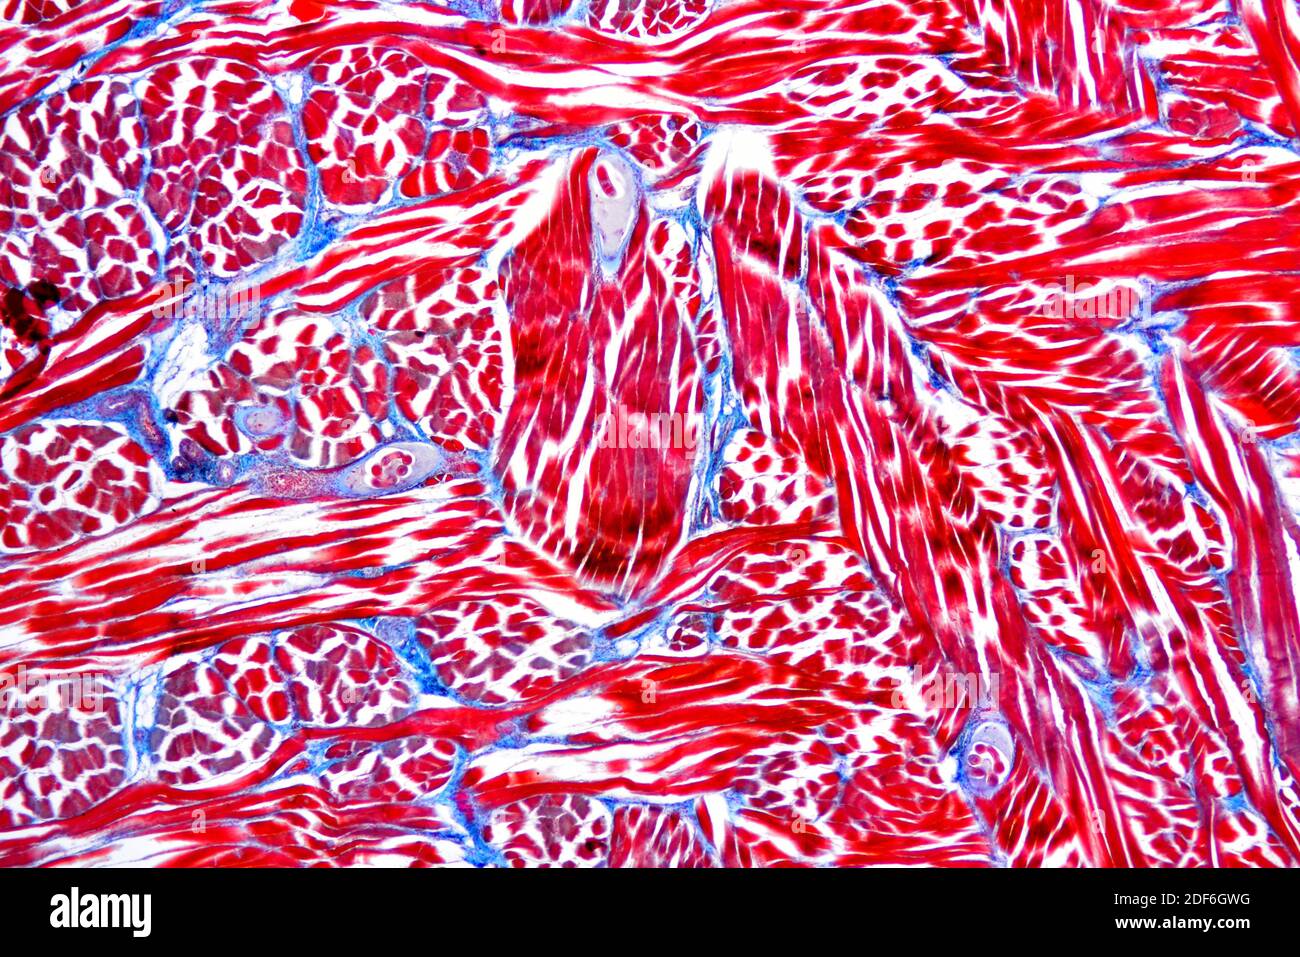 Larves de ver de porc (Trichinella spiralis) dans un tissu musculaire. Microscope optique X40. Banque D'Images